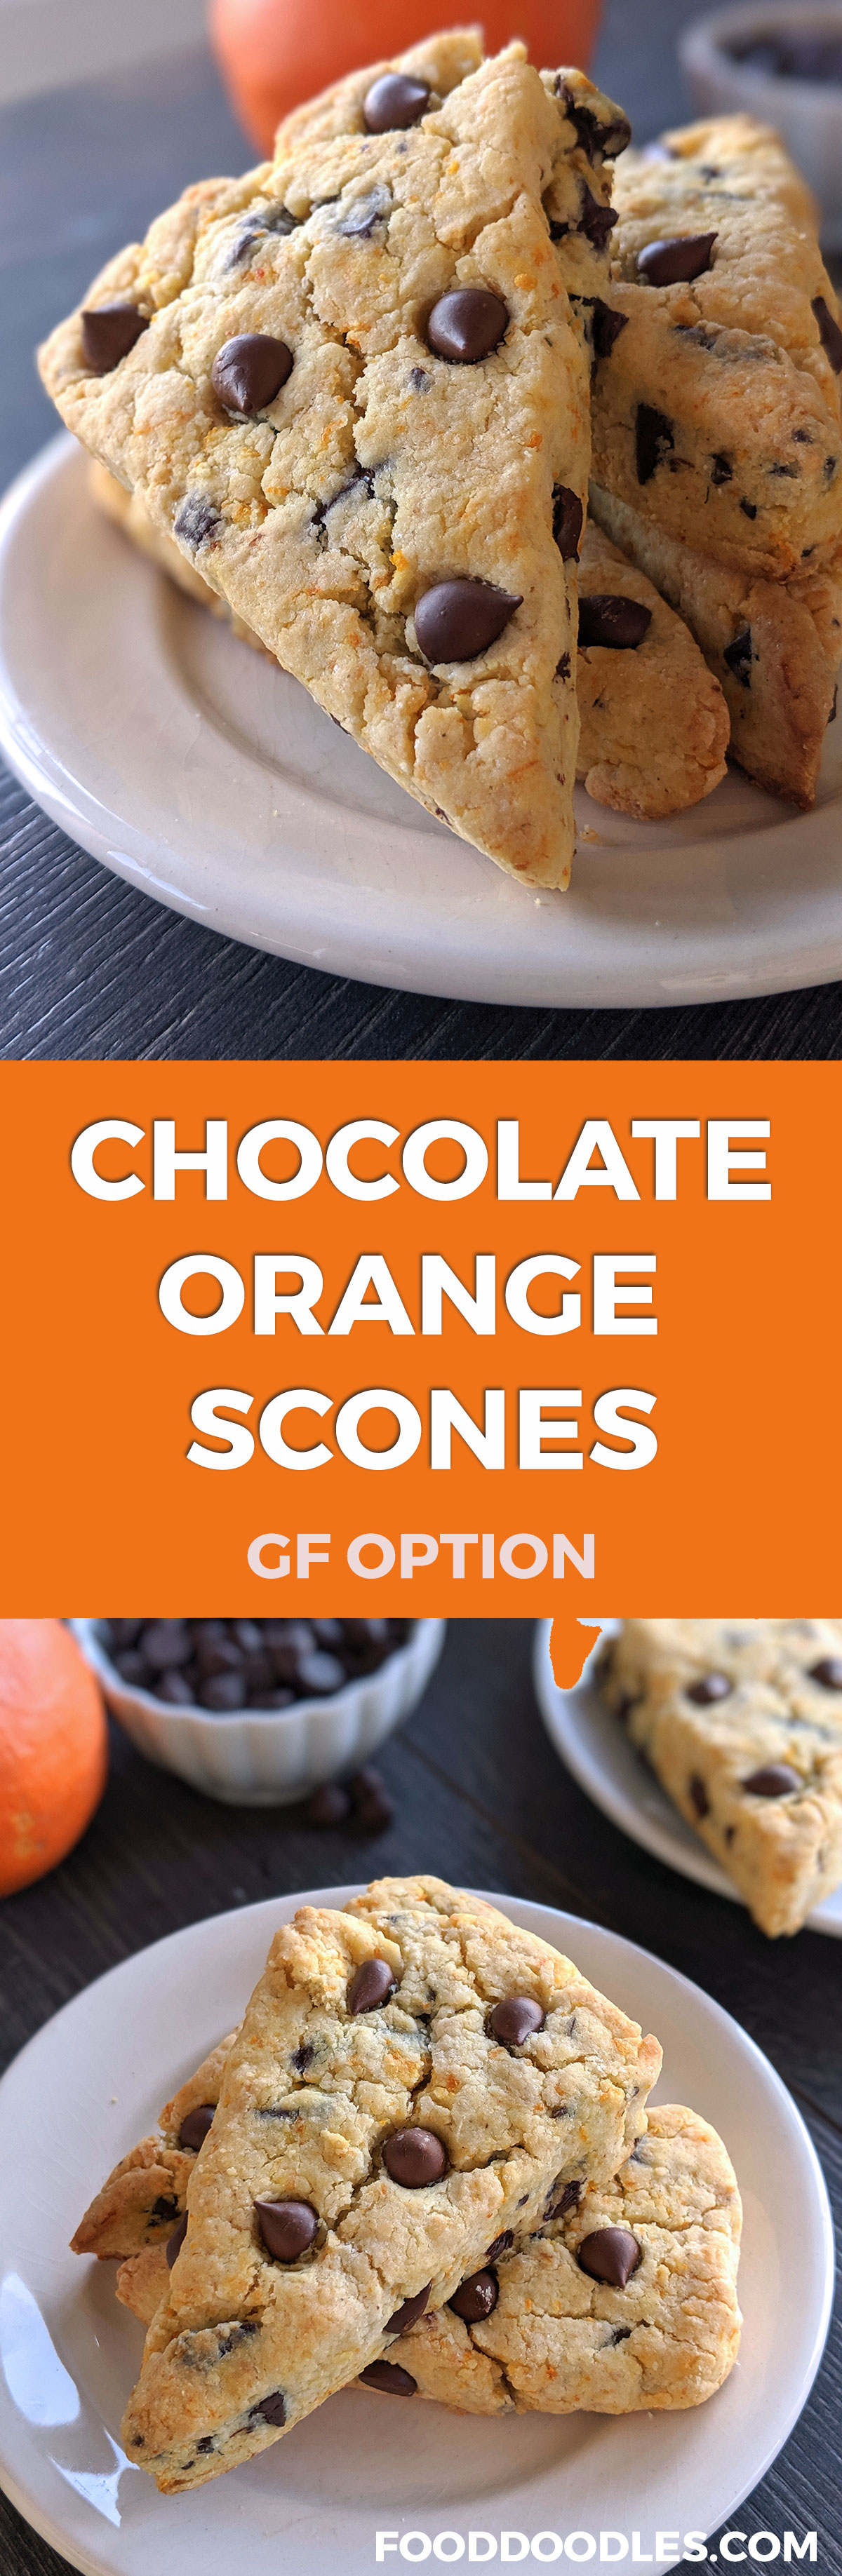 Chocolate Orange Scones